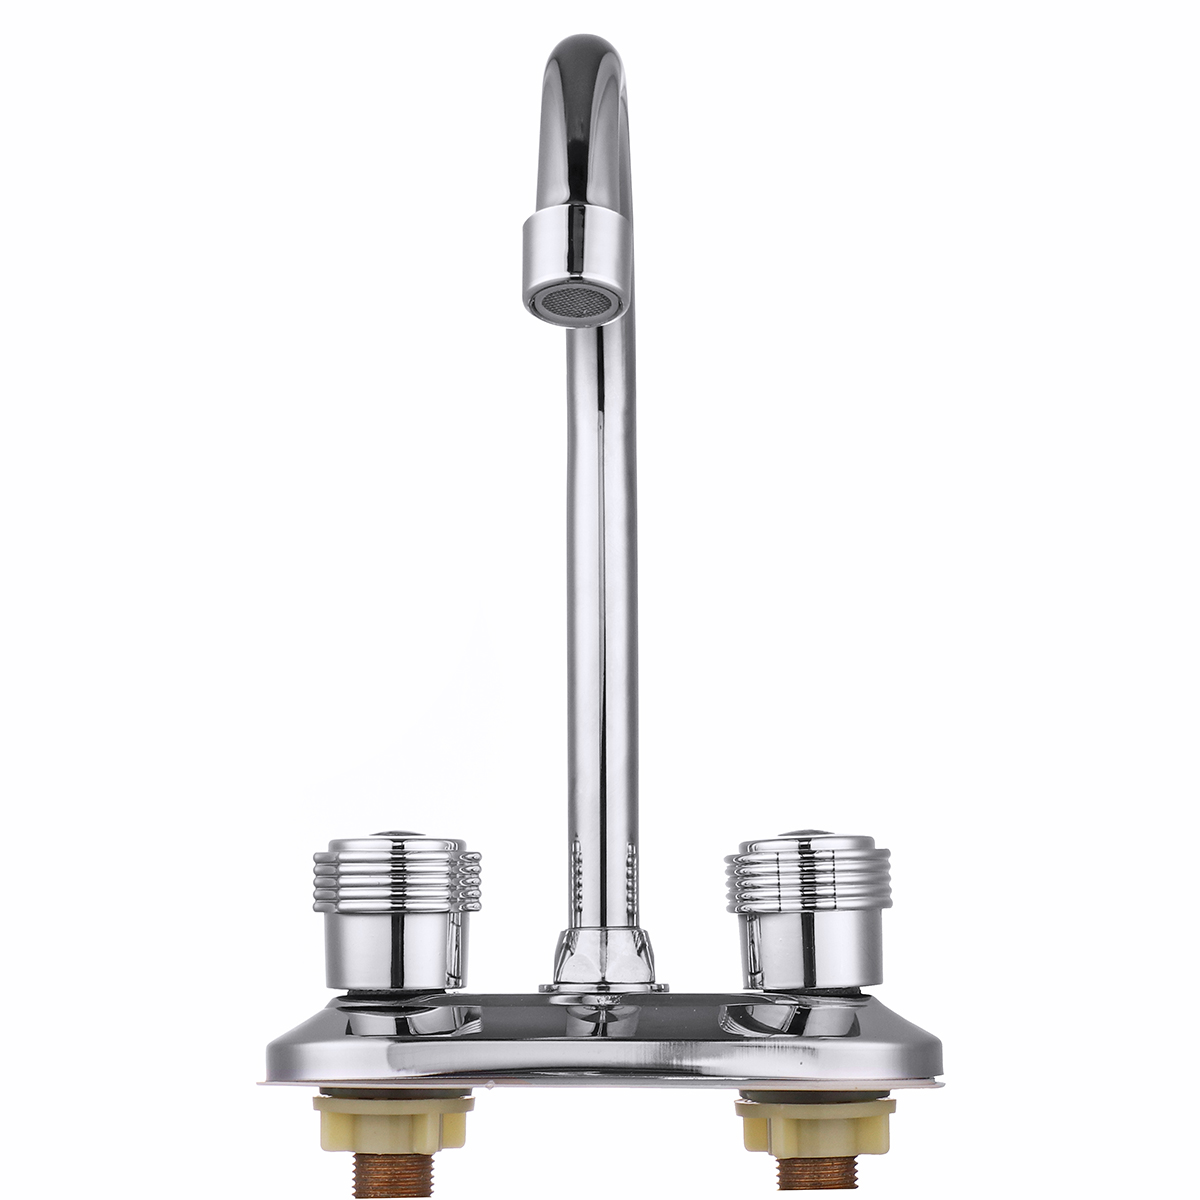 Kitchen-Water-Tap-Dual-Handle-Faucet-360deg-Double-Spout-Sink-Basin-Mixer-Bathroom-1338783